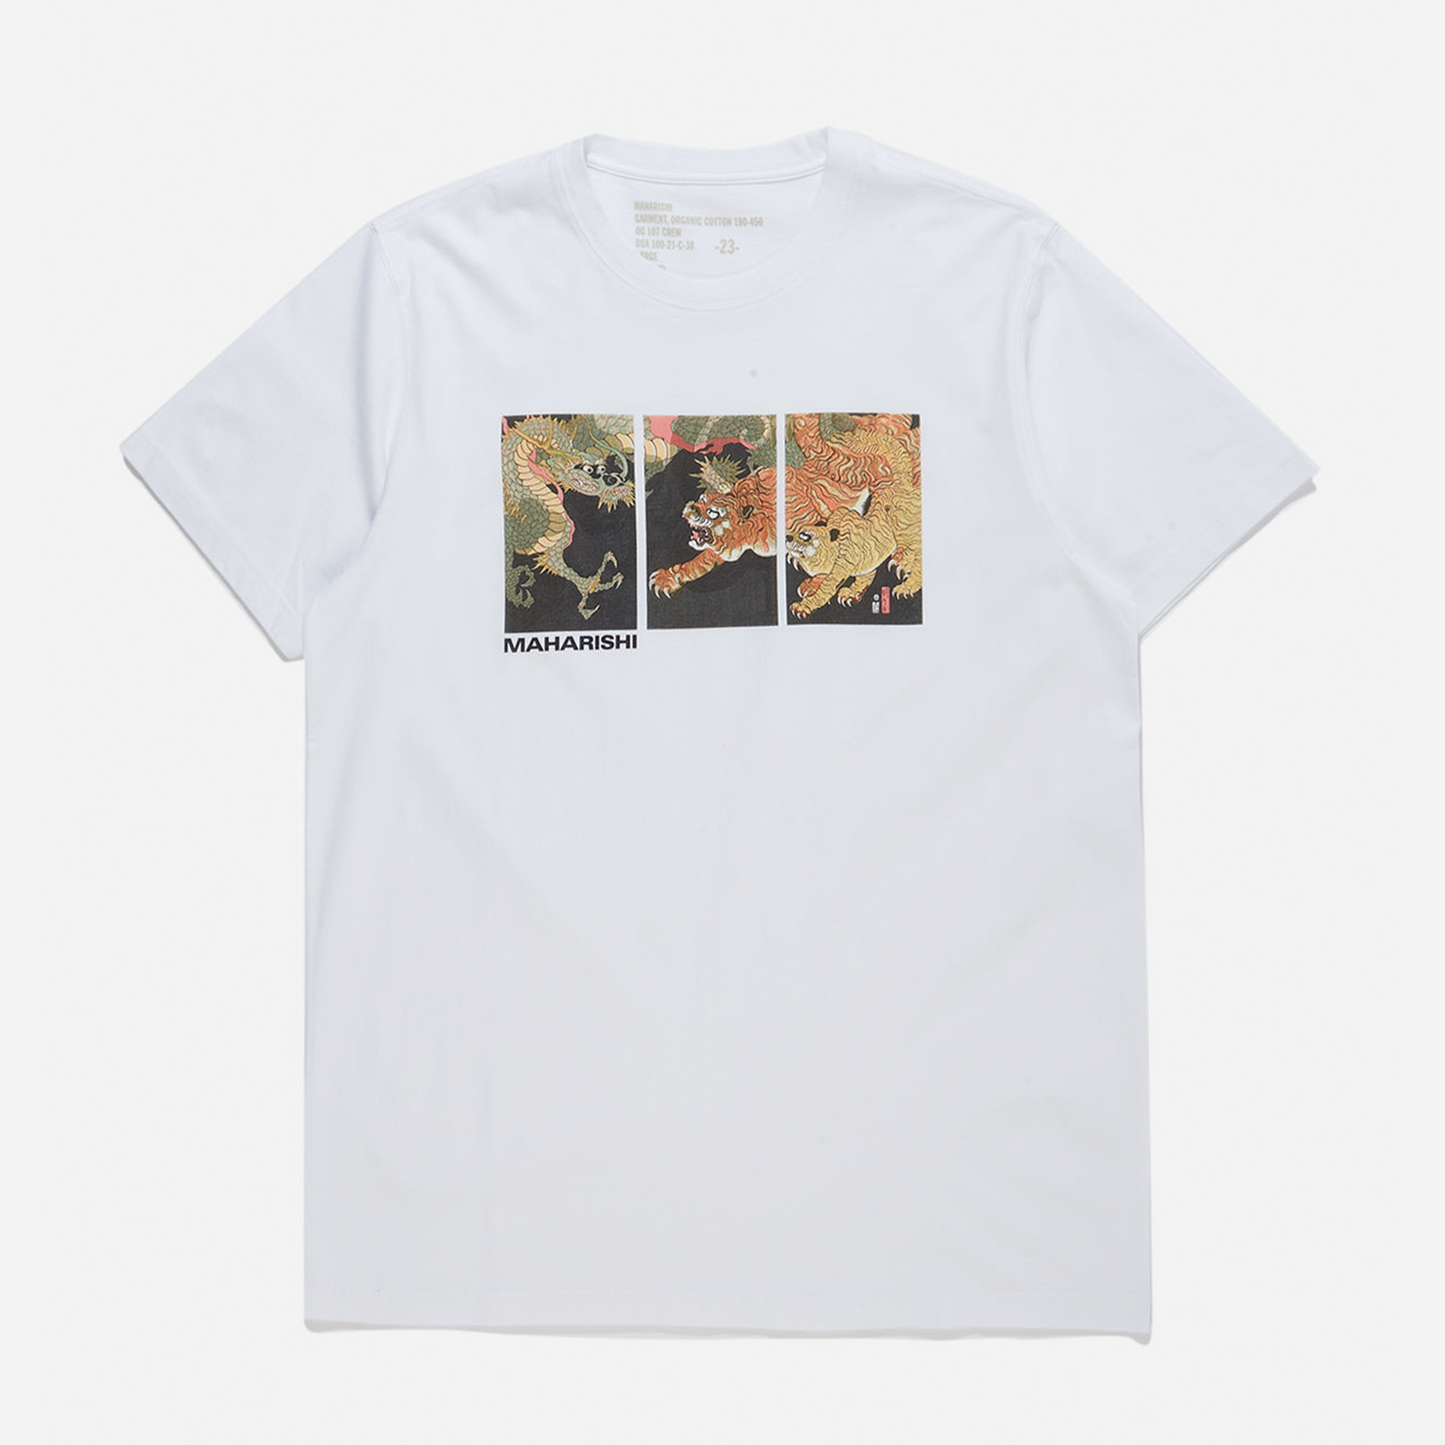 Maharishi Dragon & Tigers T-Shirt